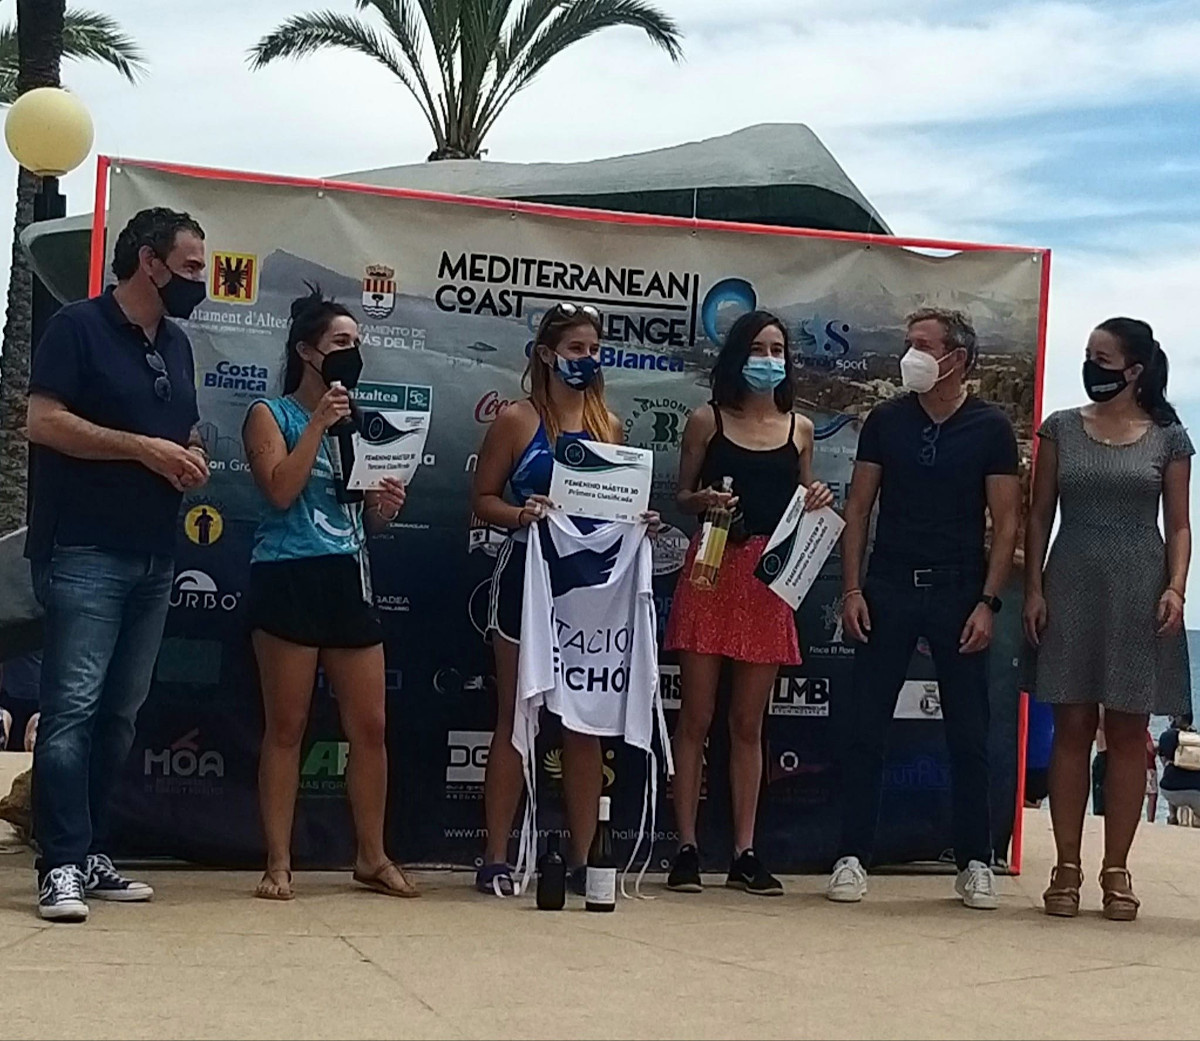 Fundació Caixaltea patrocinadora de la Mediterranean Coast Challenge